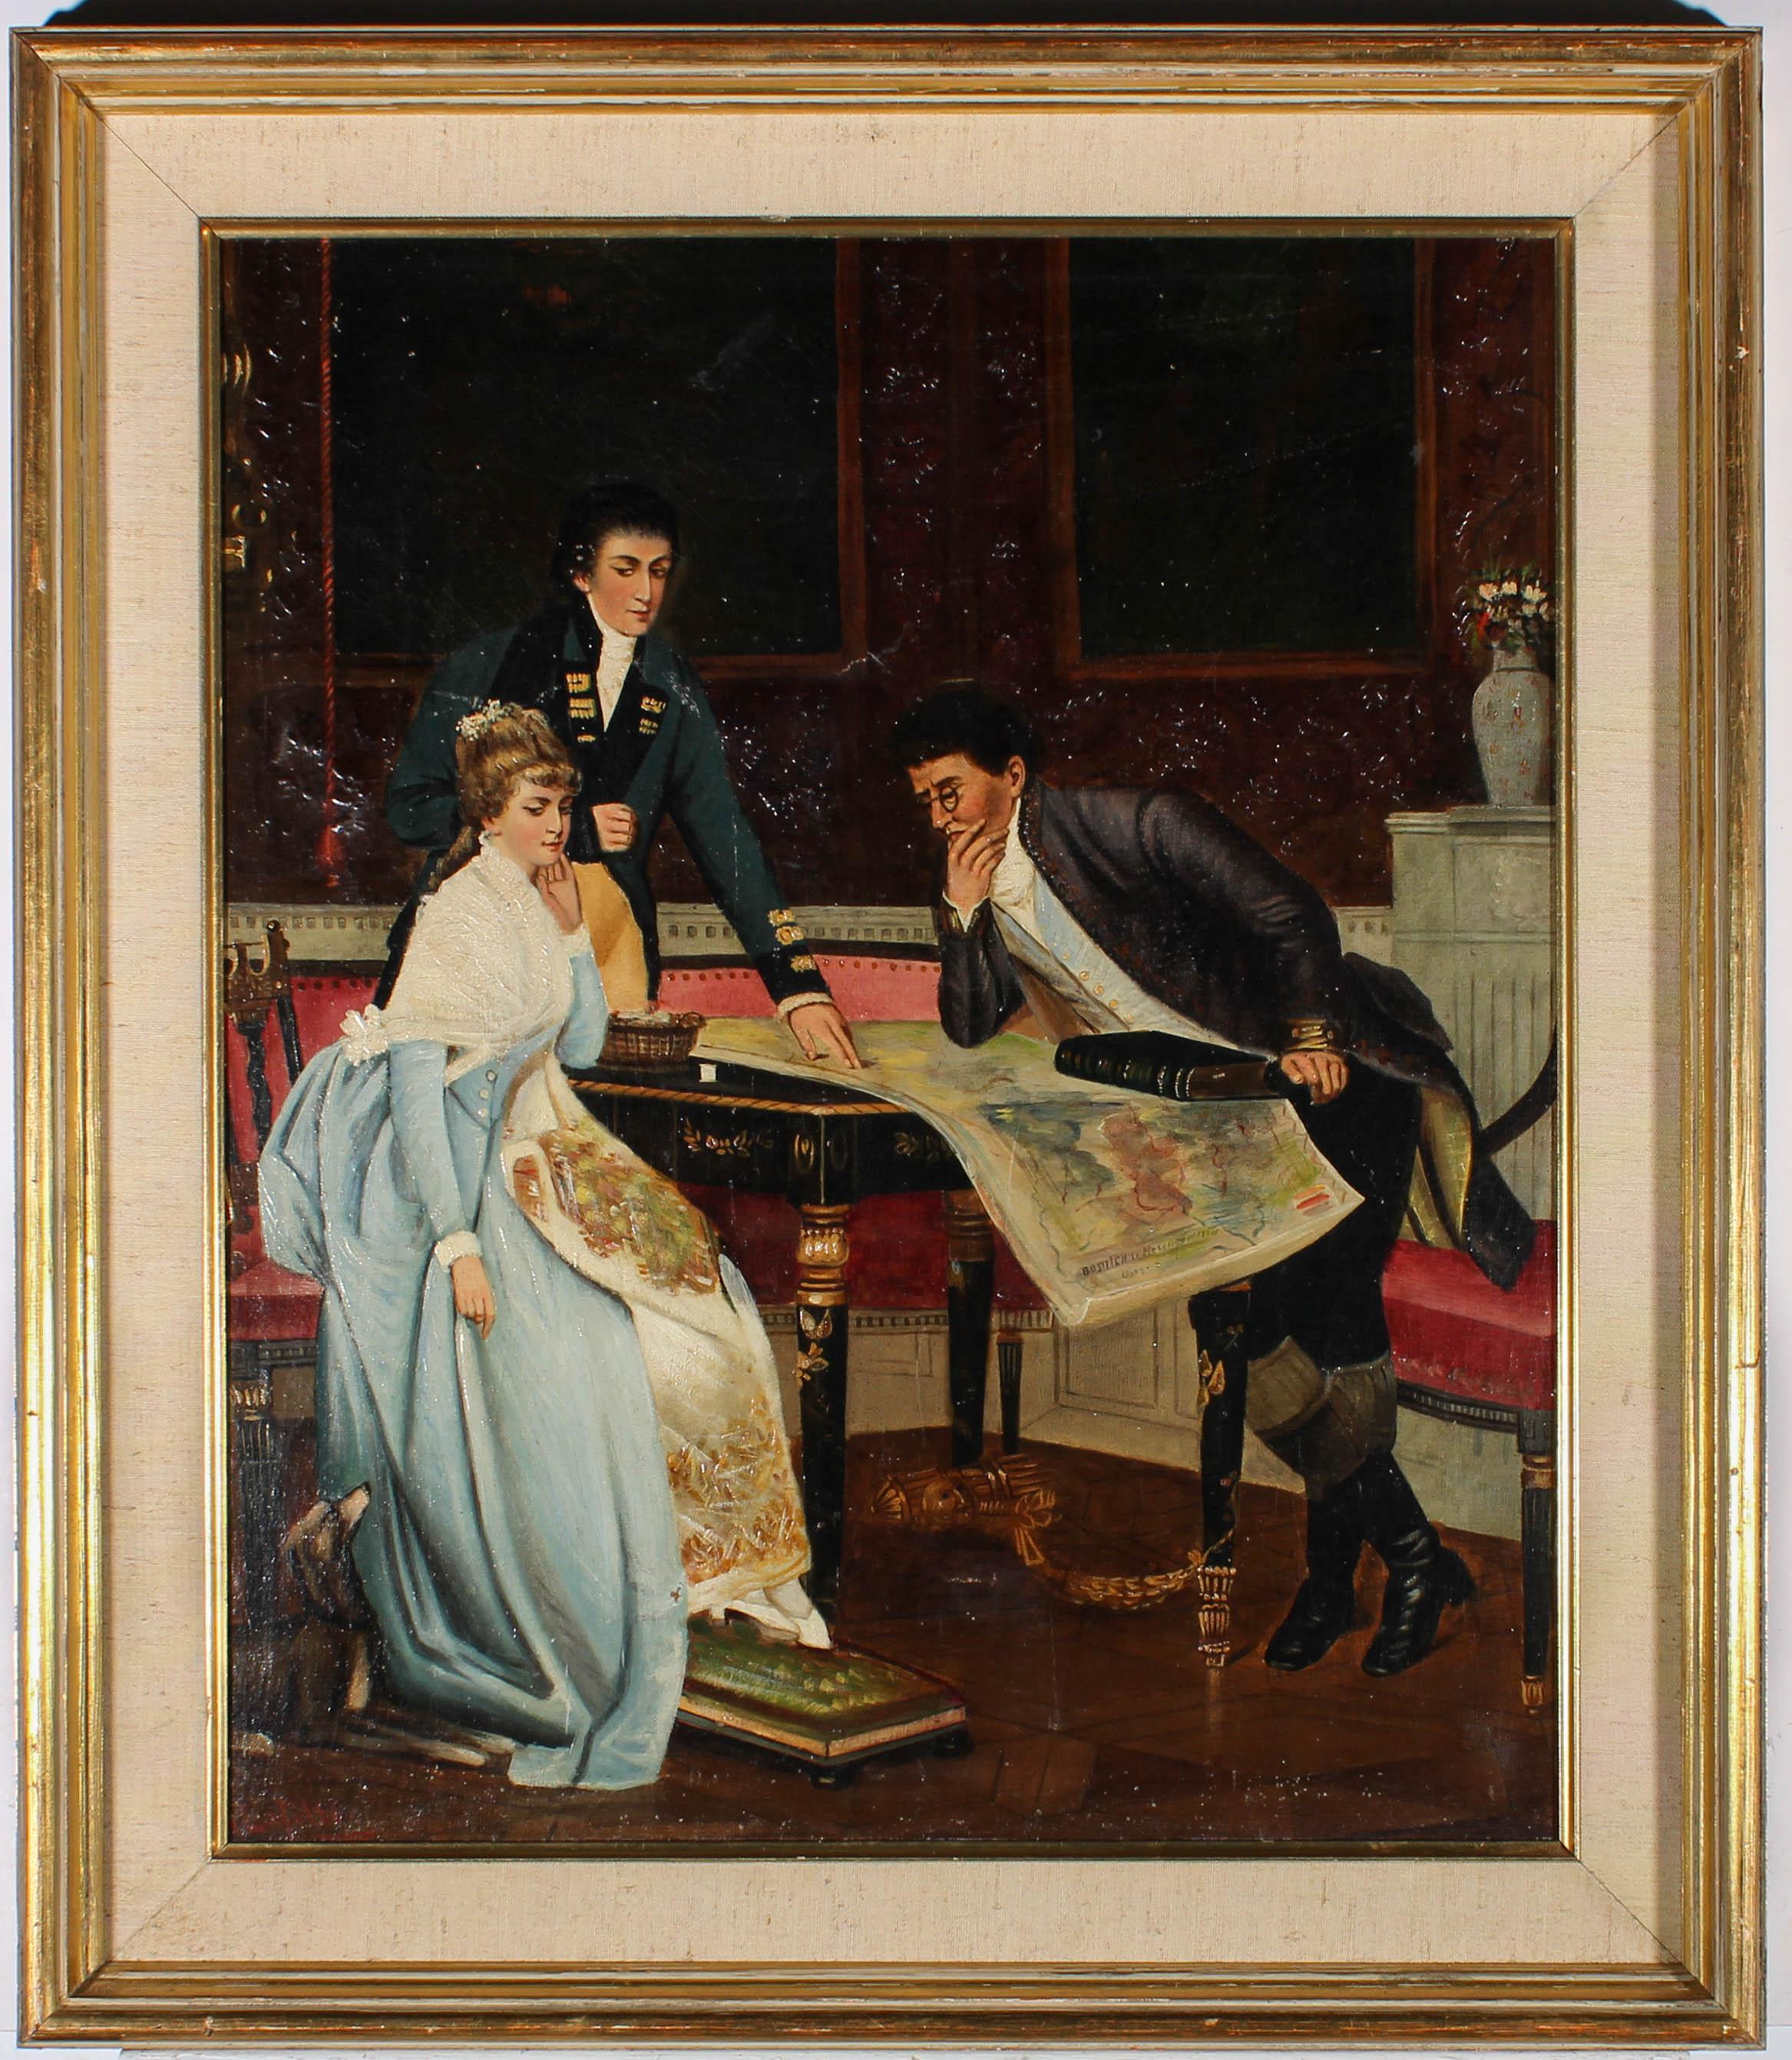 Eine schöne Genreszene der Französischen Schule, die ein Regency-Interieur zeigt, mit zwei Männern und einer Frau, die sich über eine Karte auf einem Tisch beugen. Der Künstler hat in der linken unteren Ecke signiert, und das Gemälde wird in einem